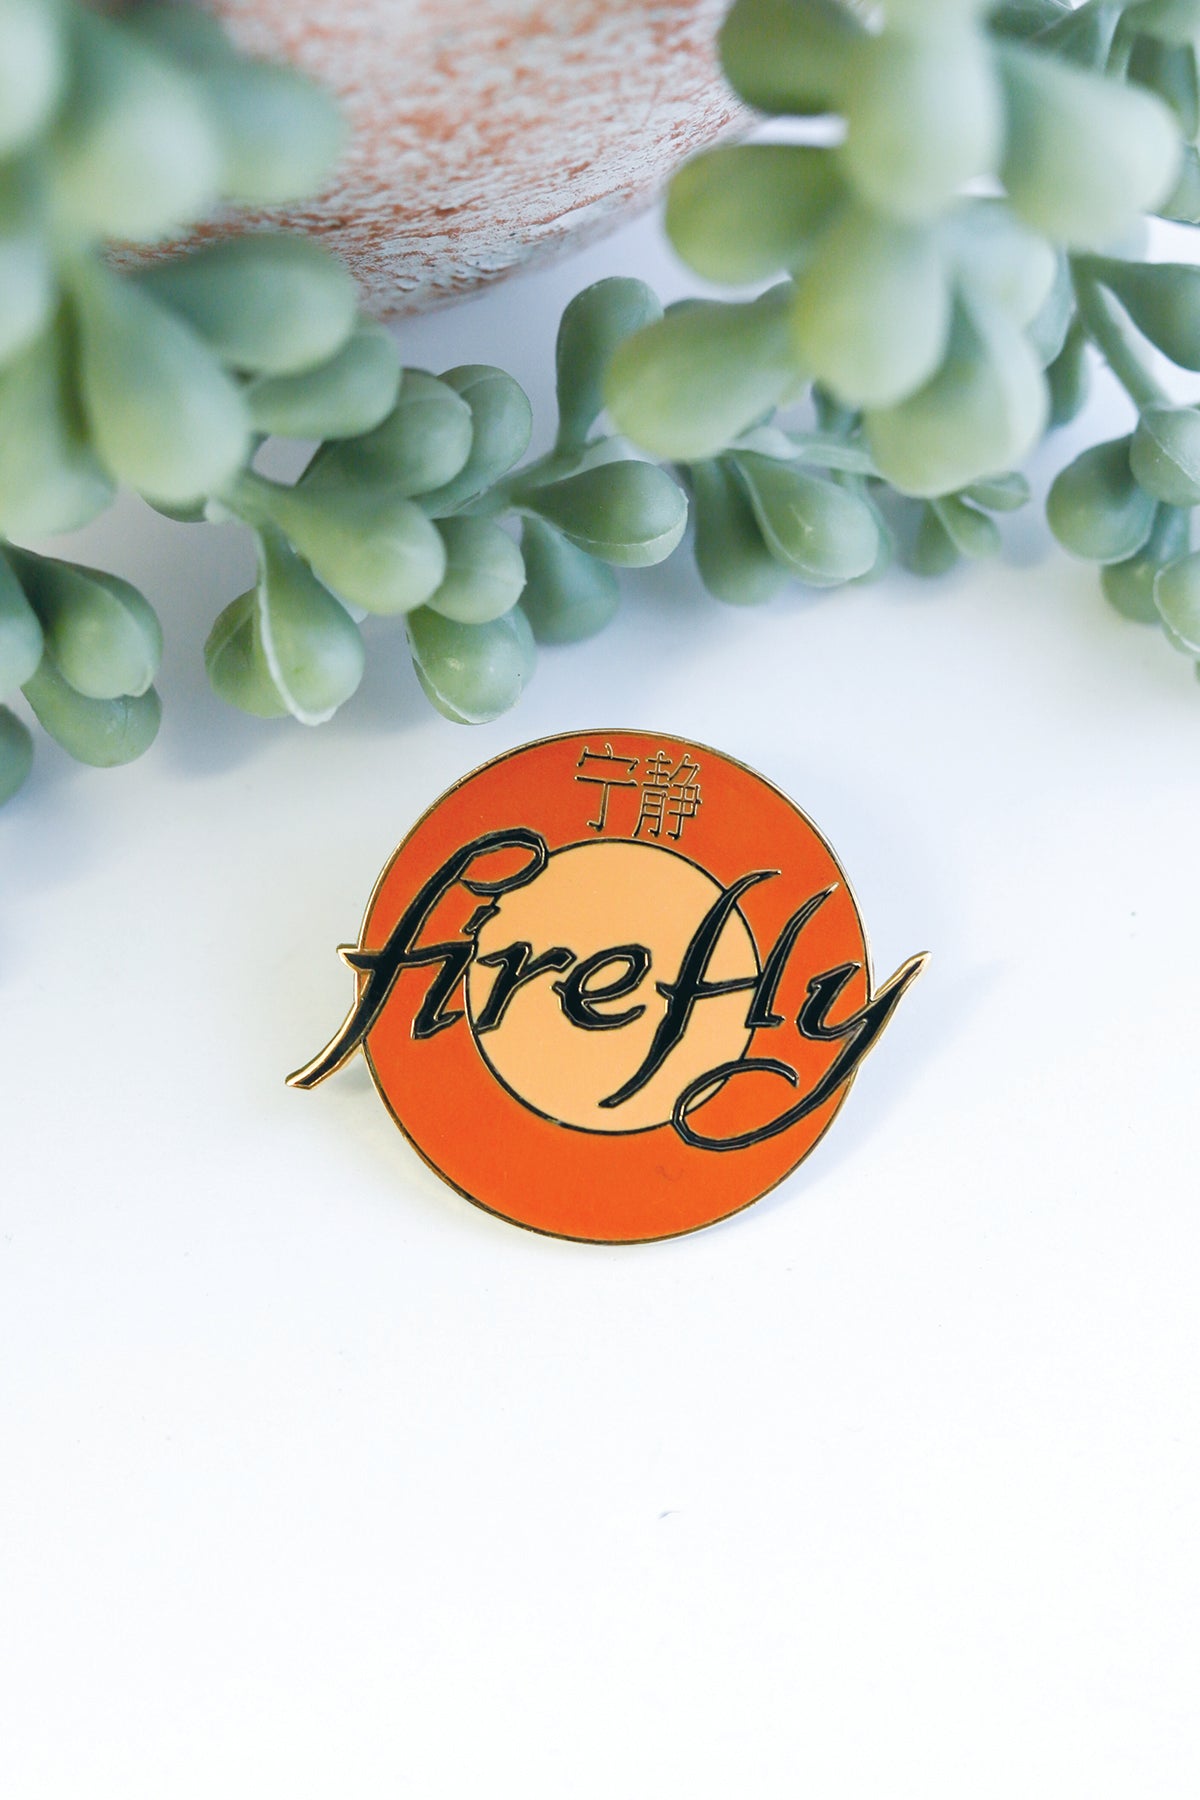 Firefly Enamel Pin